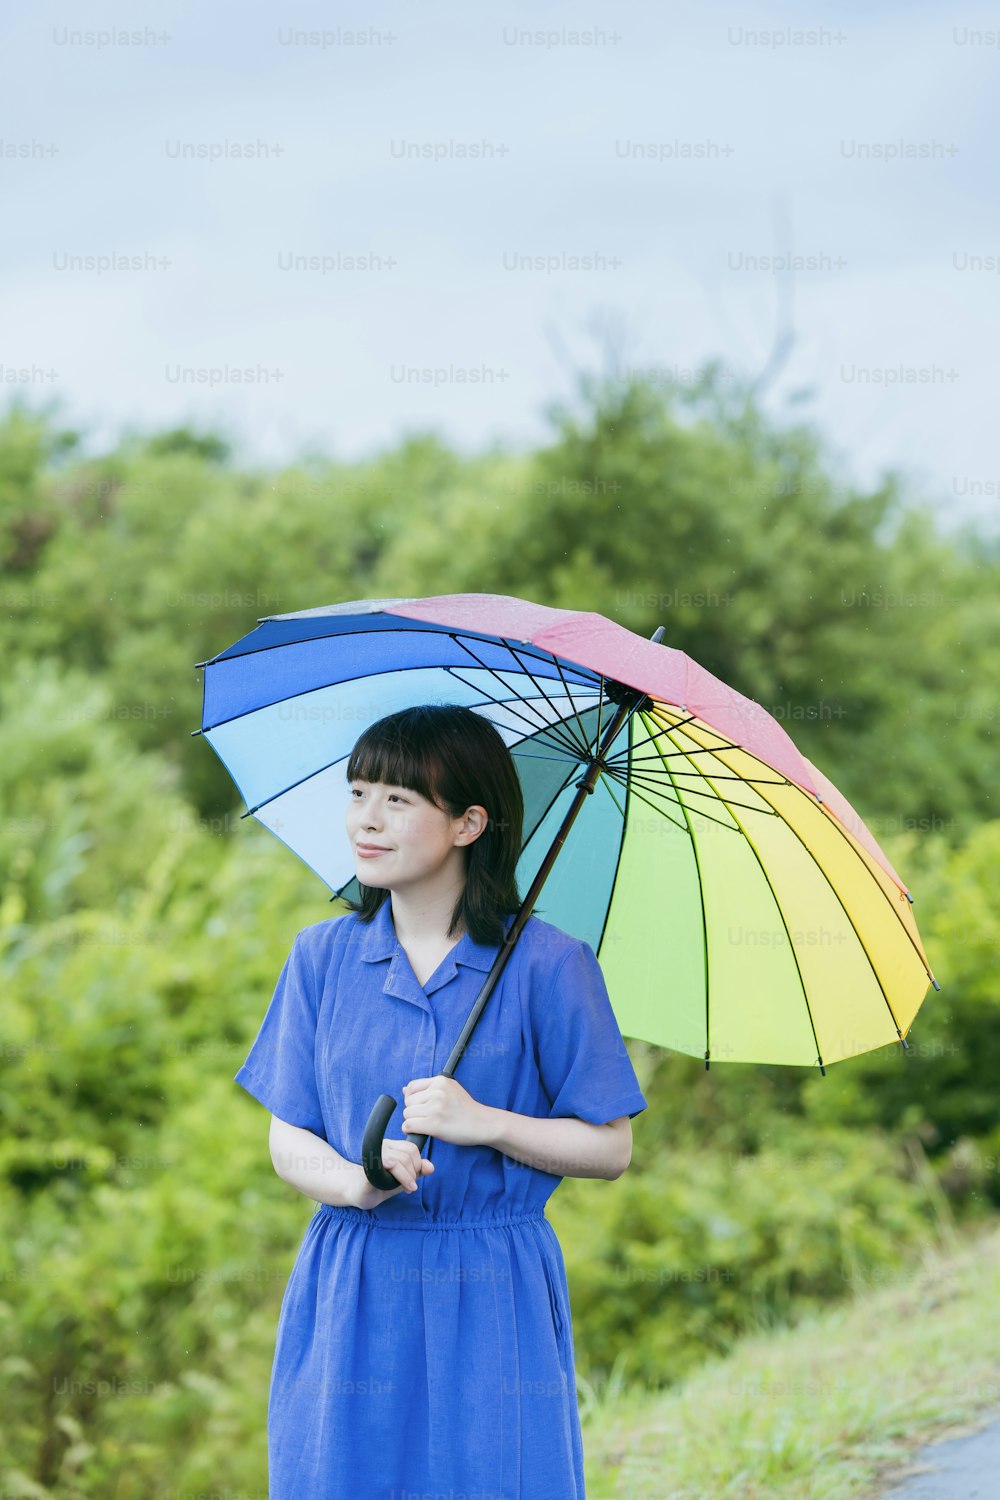 Una mujer sosteniendo un paraguas colorido bajo la lluvia